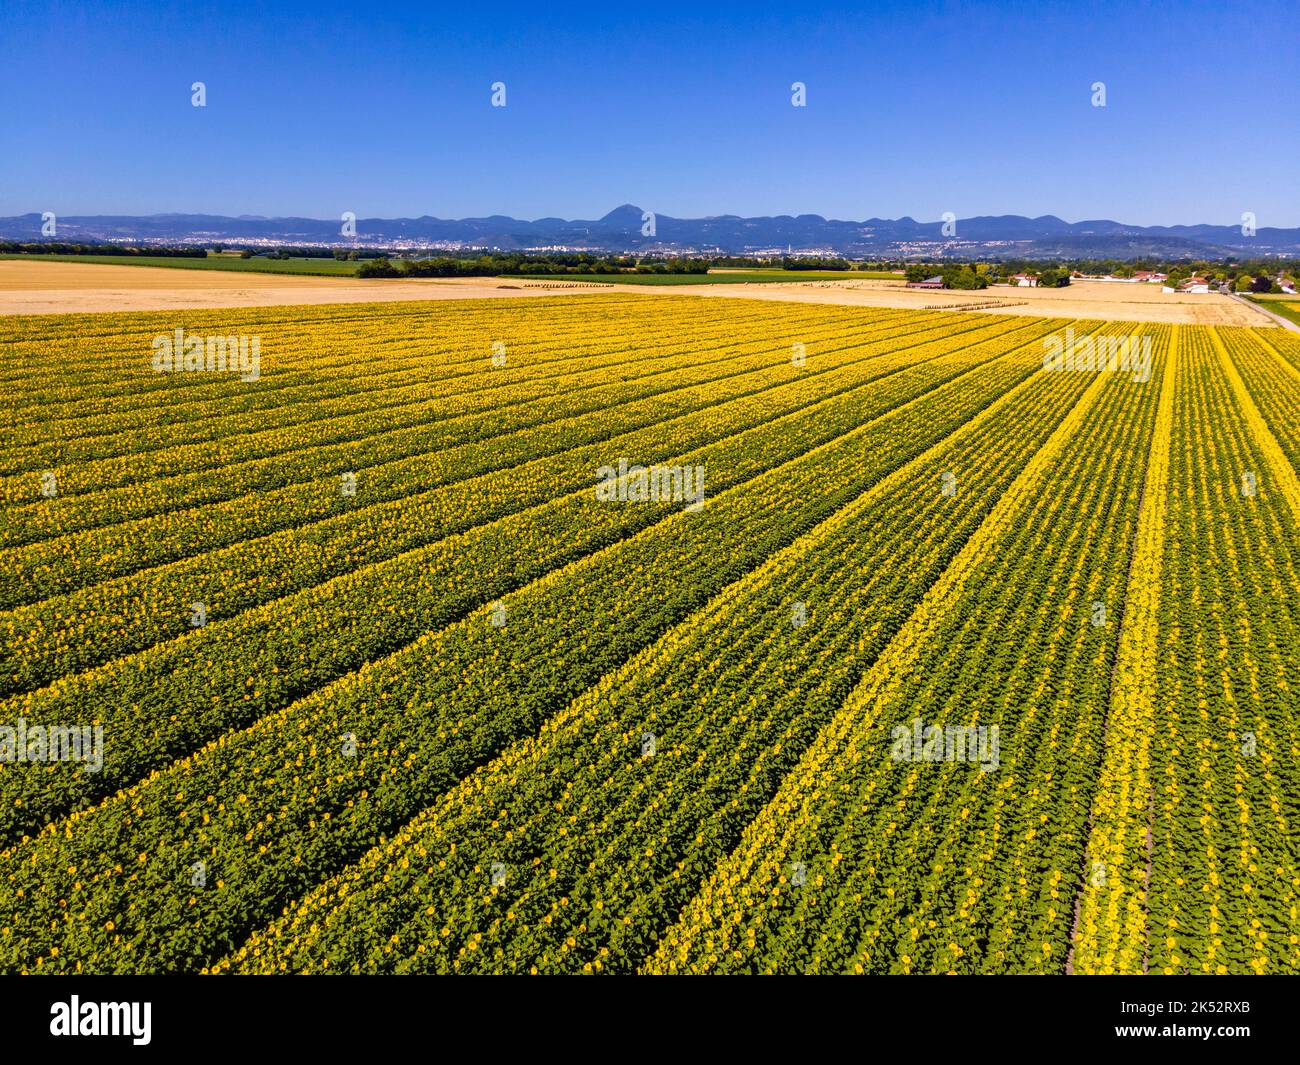 France, Puy de Dome, champs de tournesol, paysage agricole de la plaine de la Limagne, près de Riom, chaîne des Puys en arrière-plan (vue aérienne) Banque D'Images